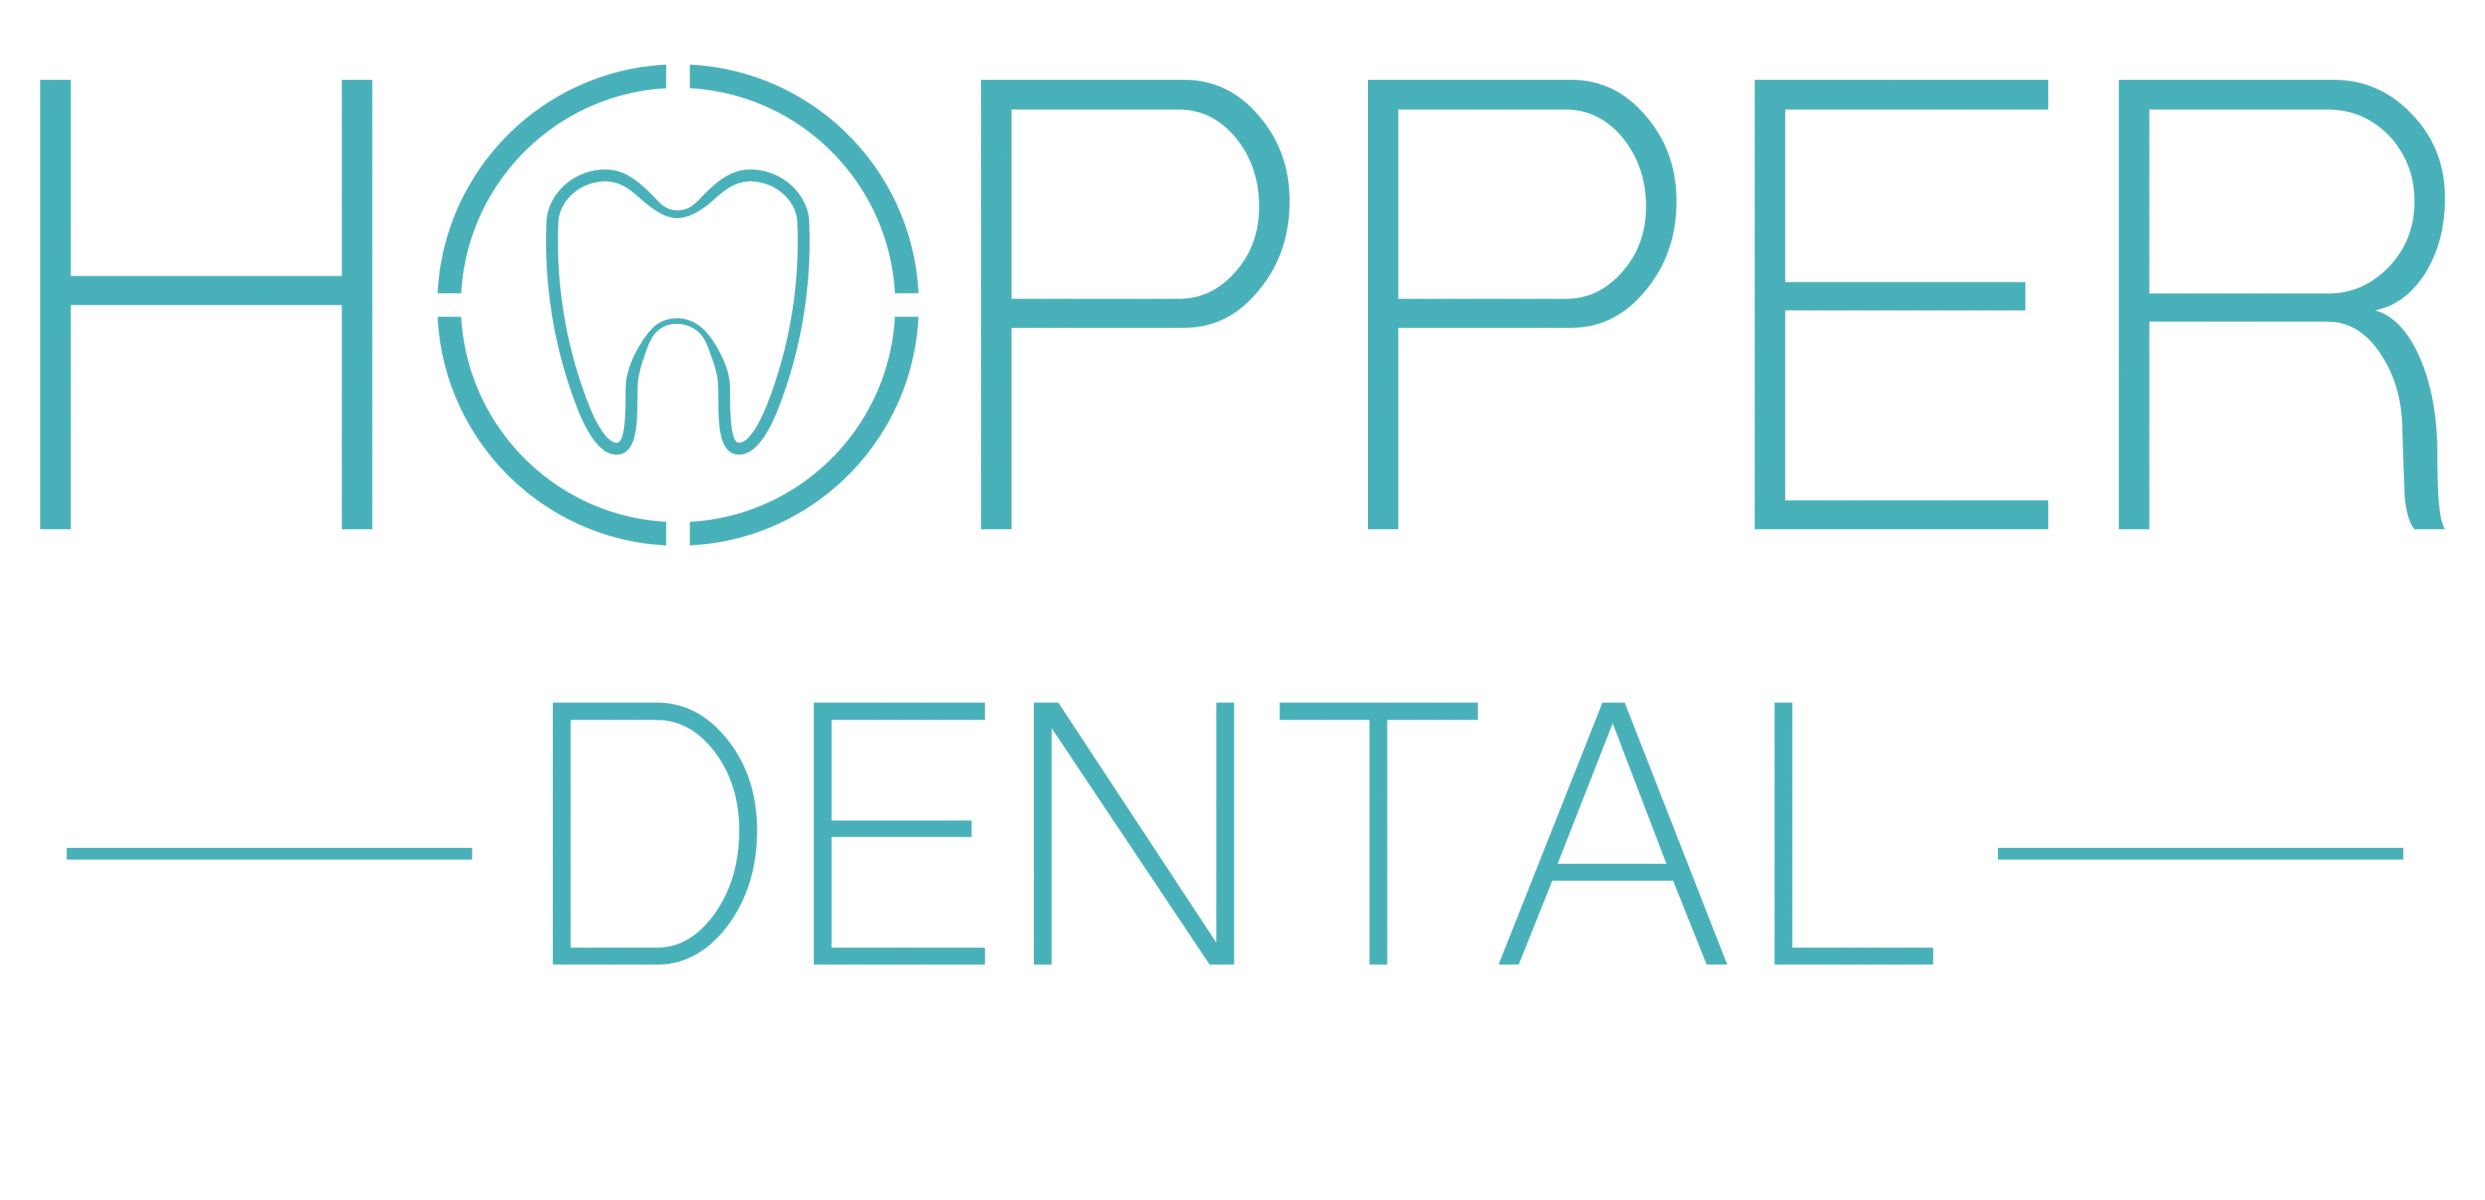 Hopper Dental